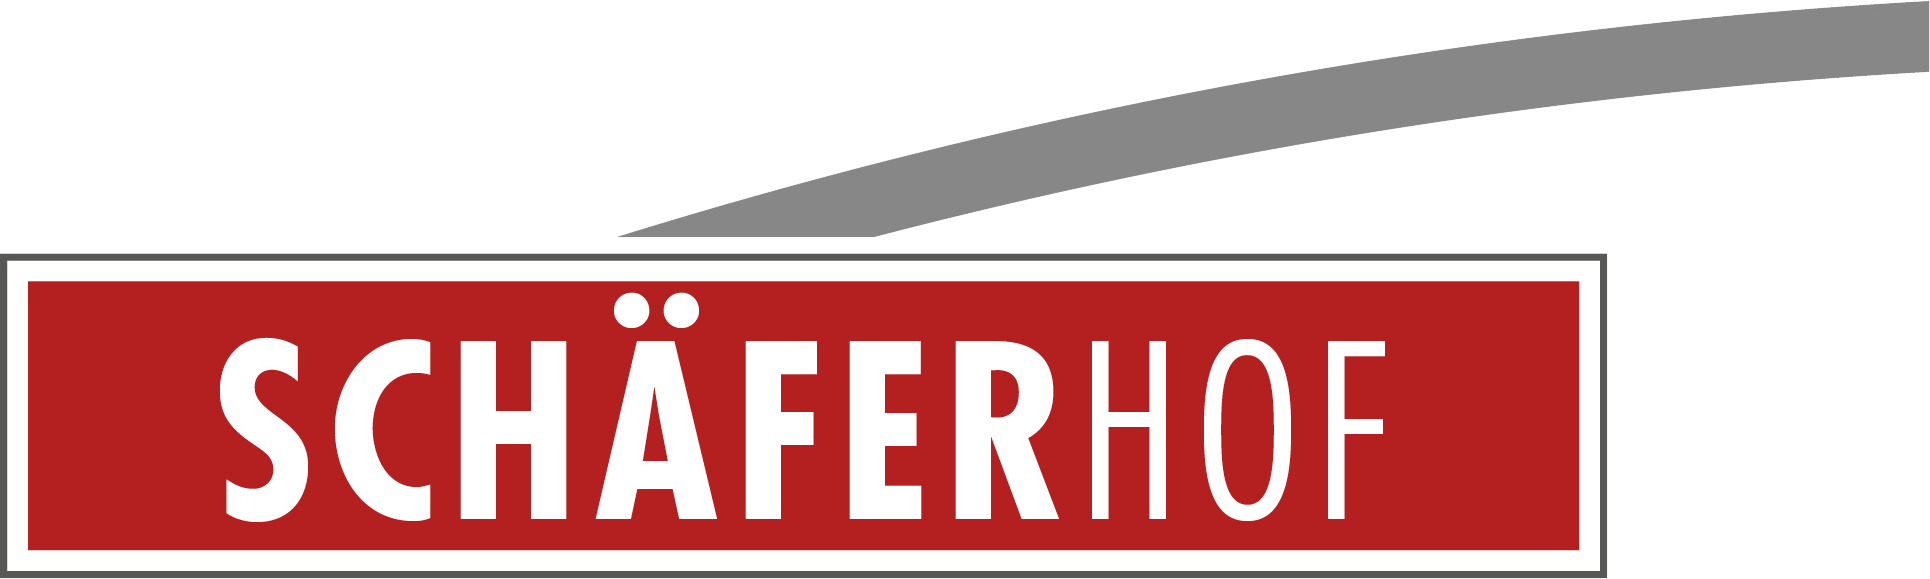 Schaeferhof Logo